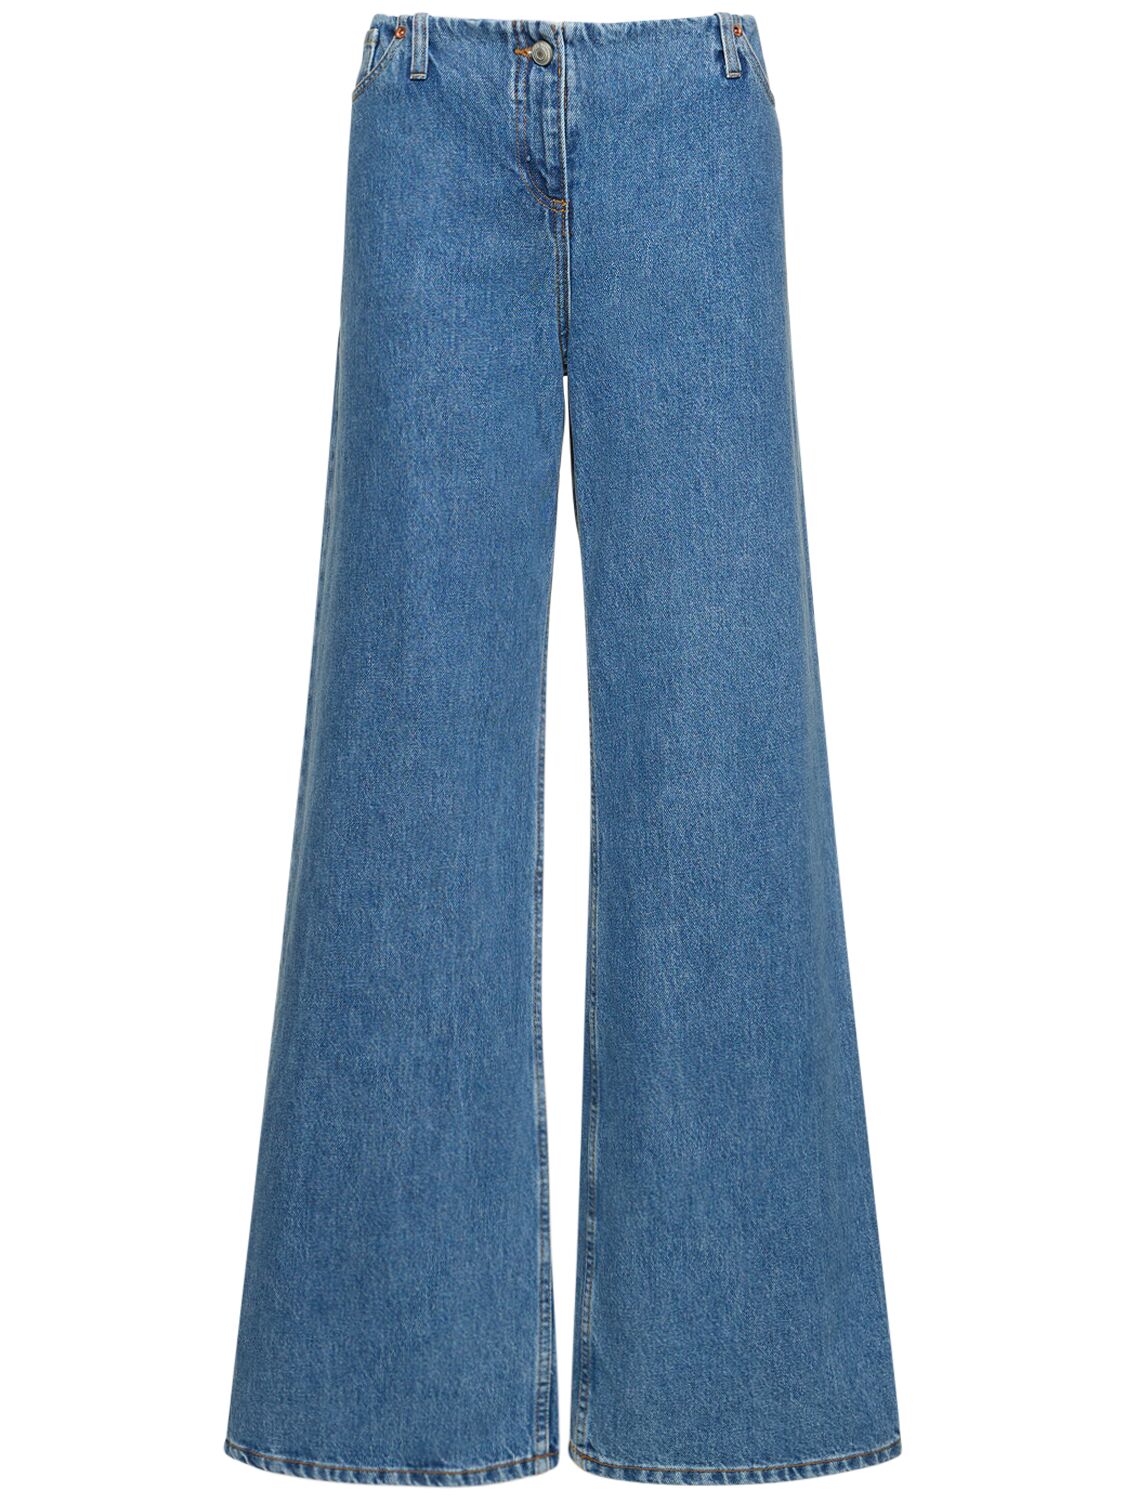 Low Rise Wide Cotton Denim Jeans